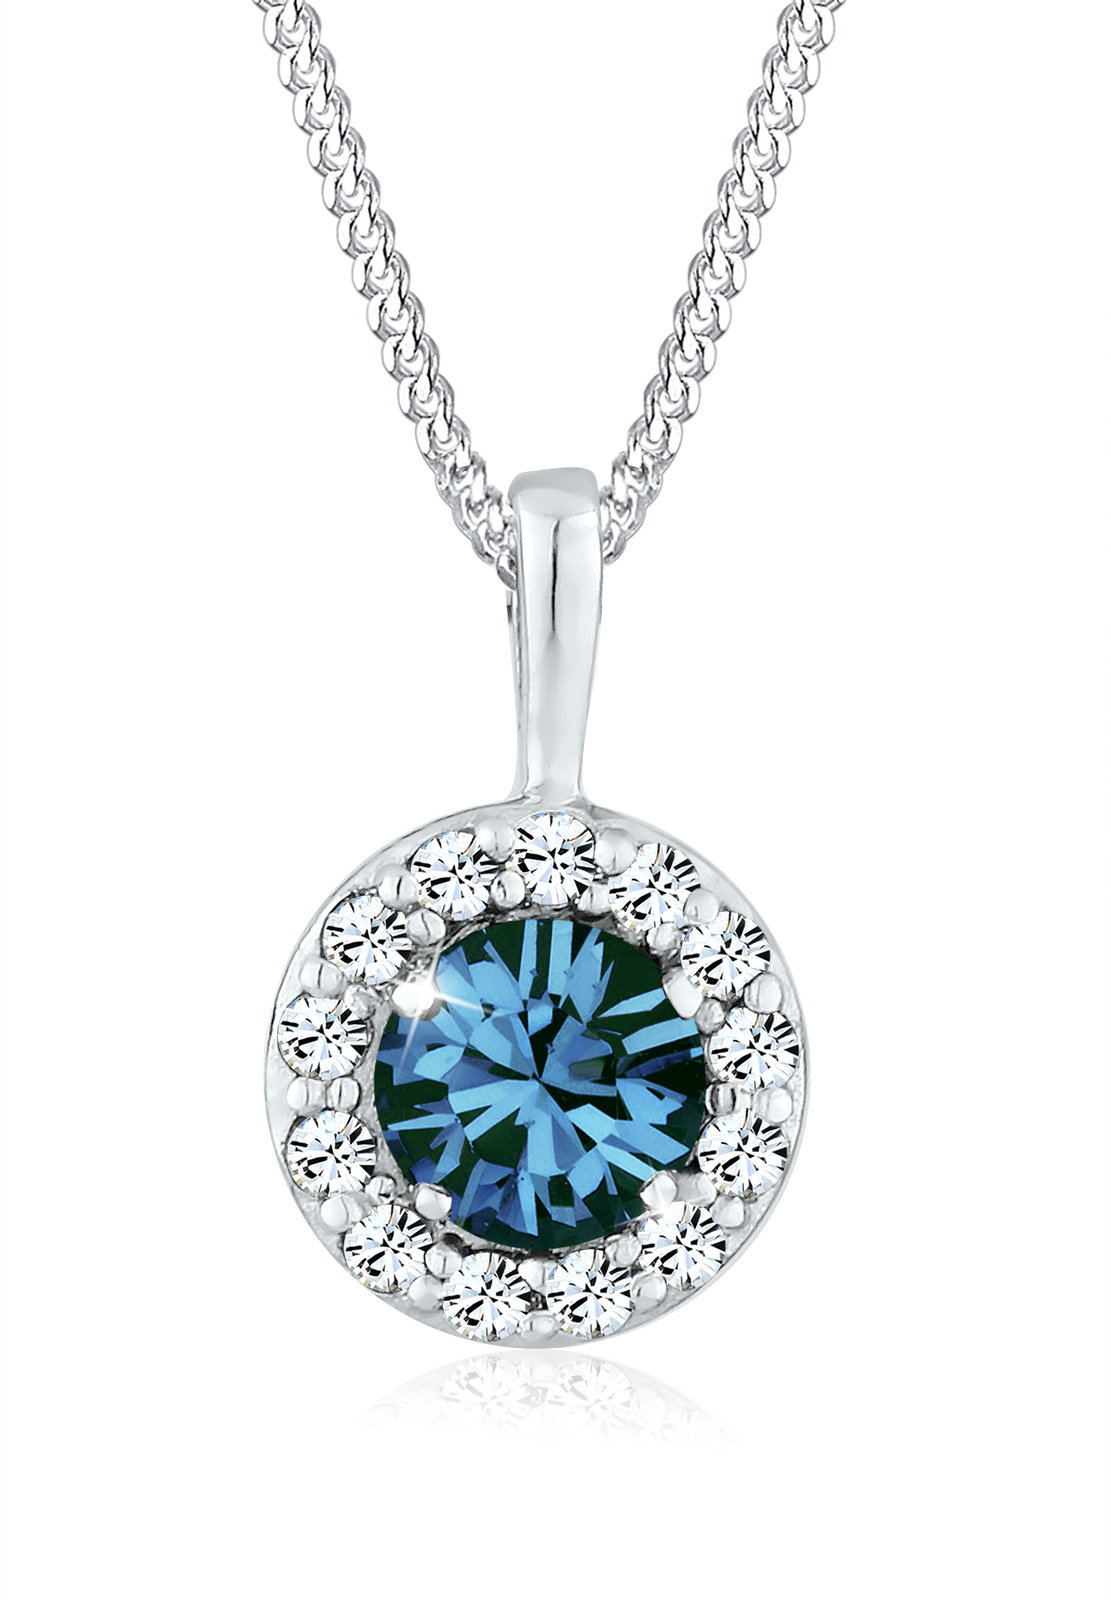 Halskette Kreis | Kristall ( Blau ) | 925er Sterling Silber